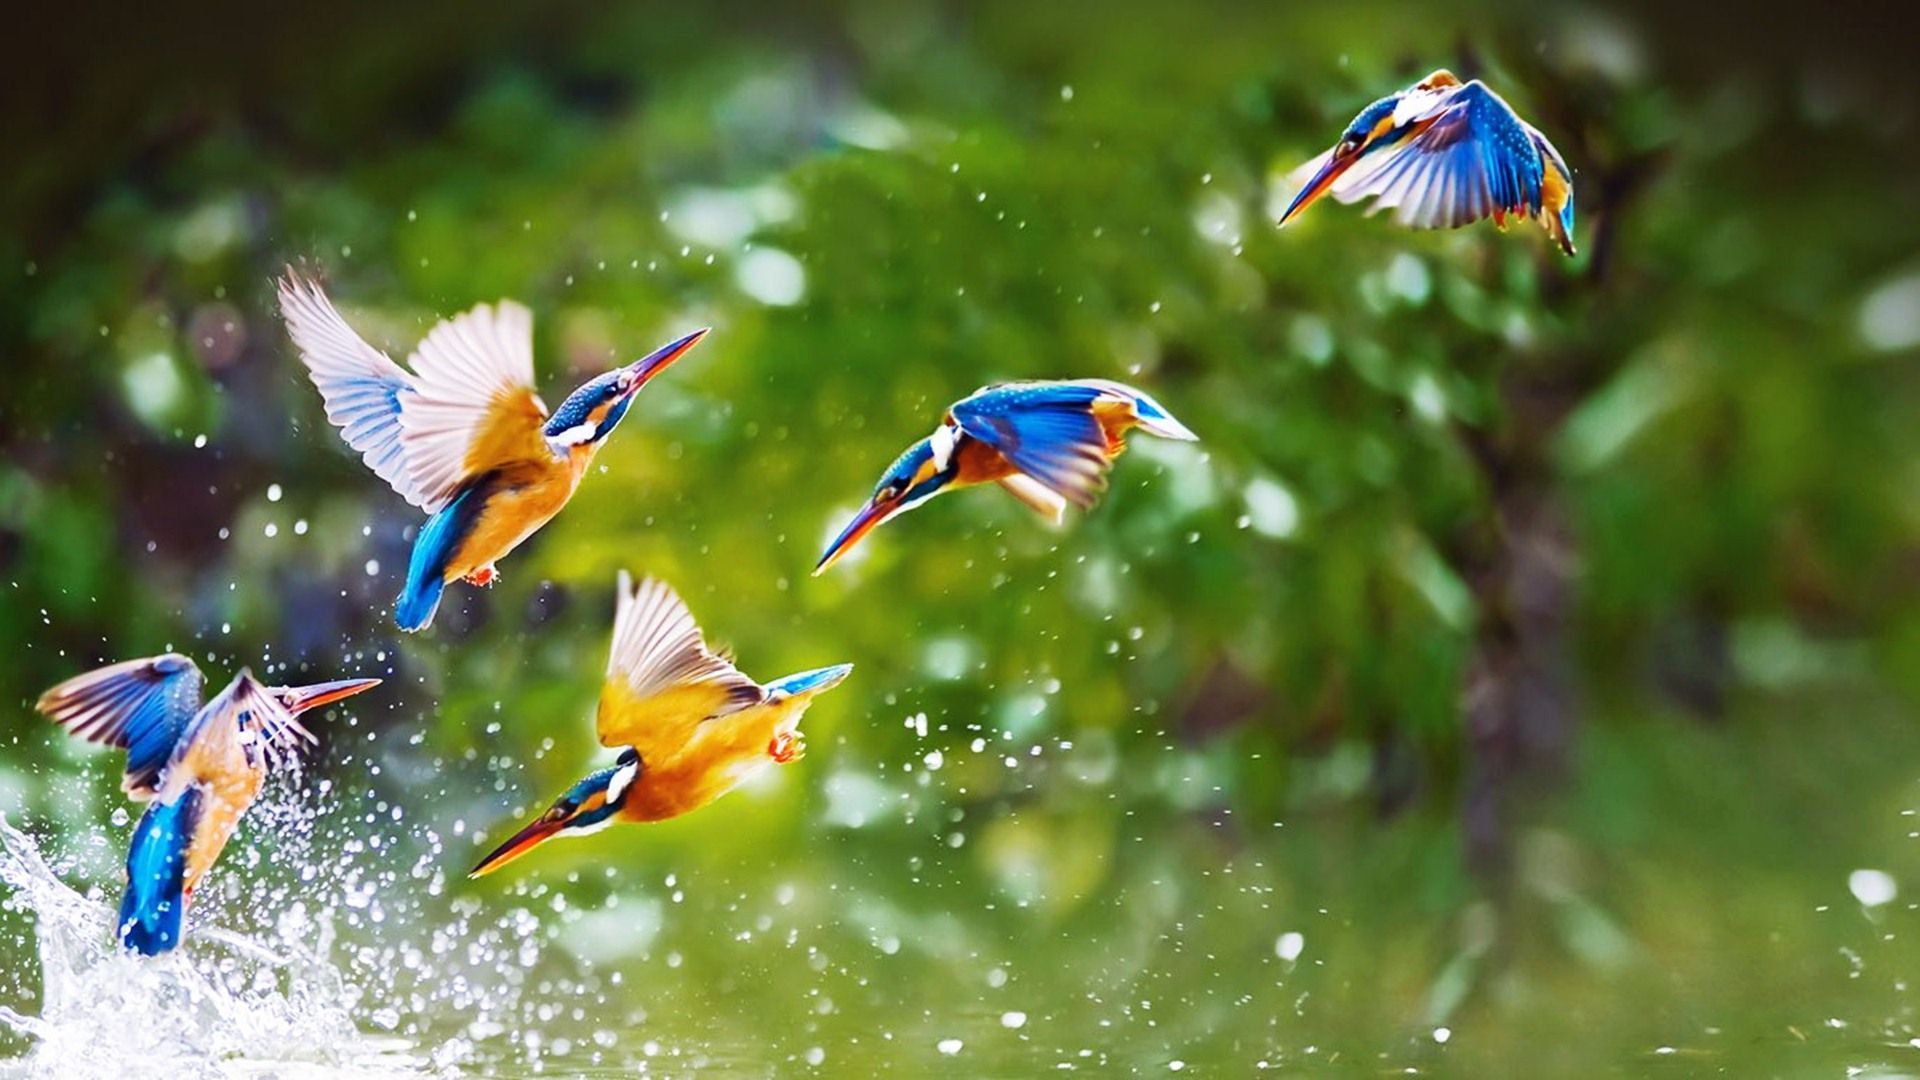 خوشگل ترین پرنده های شکاری دنیا با بال رنگی در حال آب بازی